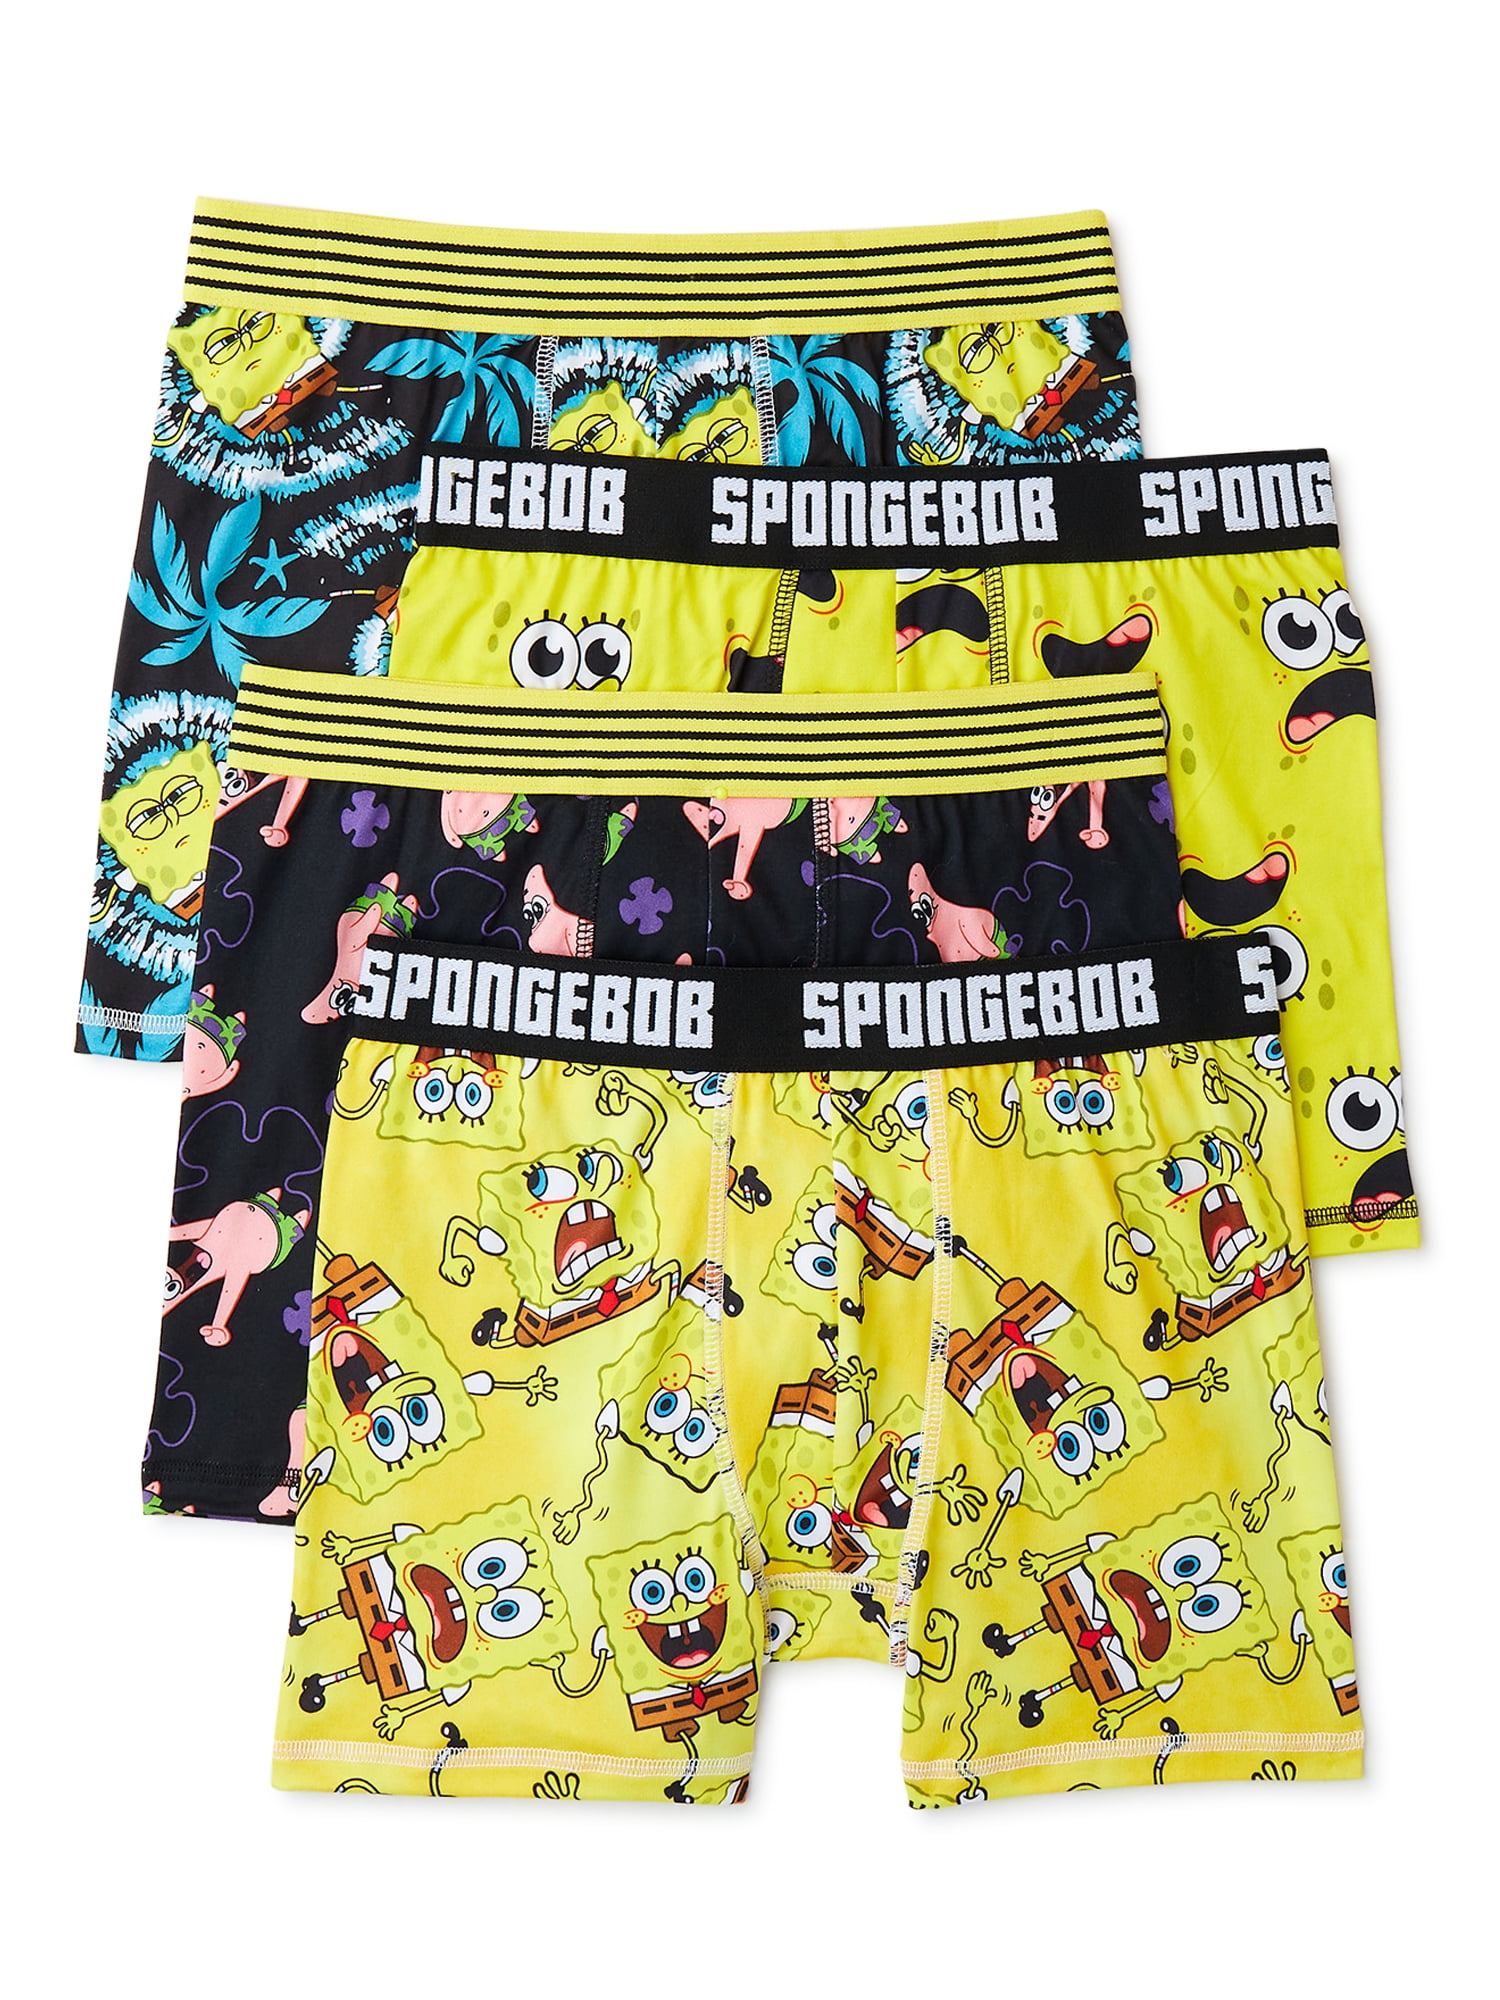 CRAZYBOXER Spongebob Halloween; Men's Boxer Briefs, Gift Box